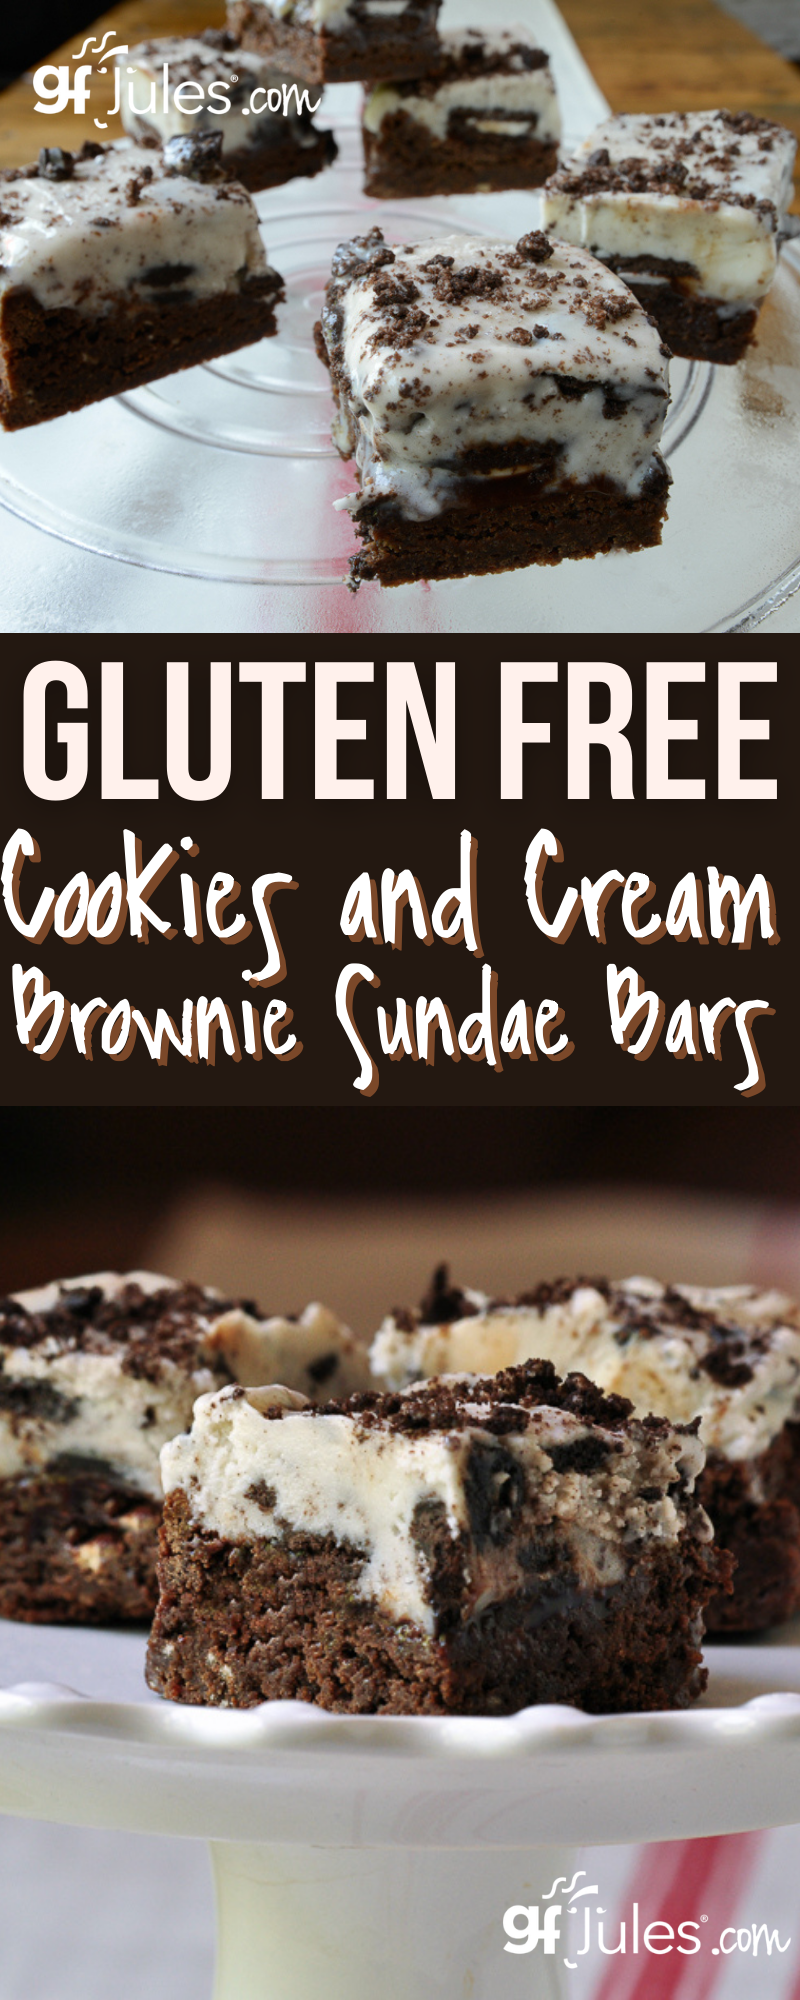 Gluten Free Cookies and Cream Brownie Sundae Bars